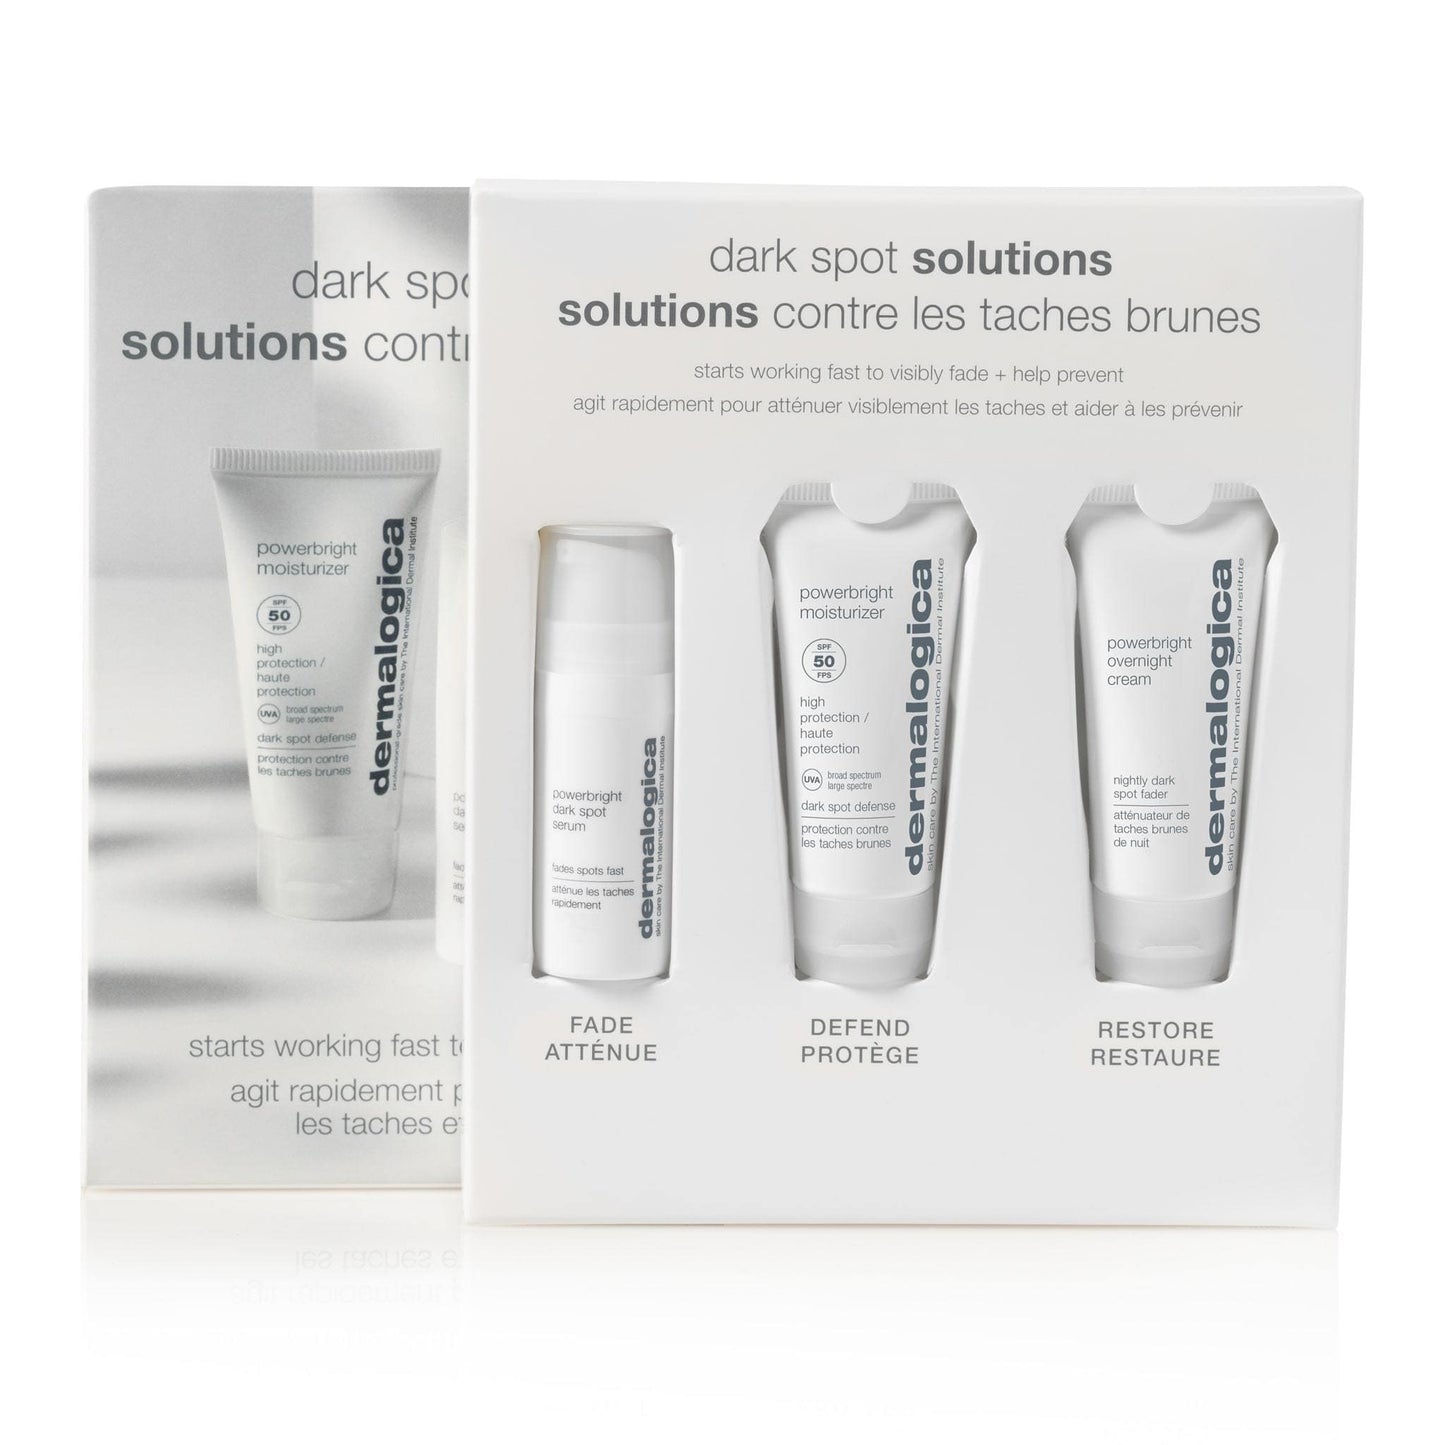 Dermalogica Dark Spot Solutions Hautpflege-Set mit drei Produkten: Powerbright Moisturizer, Powerbright Dark Spot Serum und Powerbright Overnight Cream.